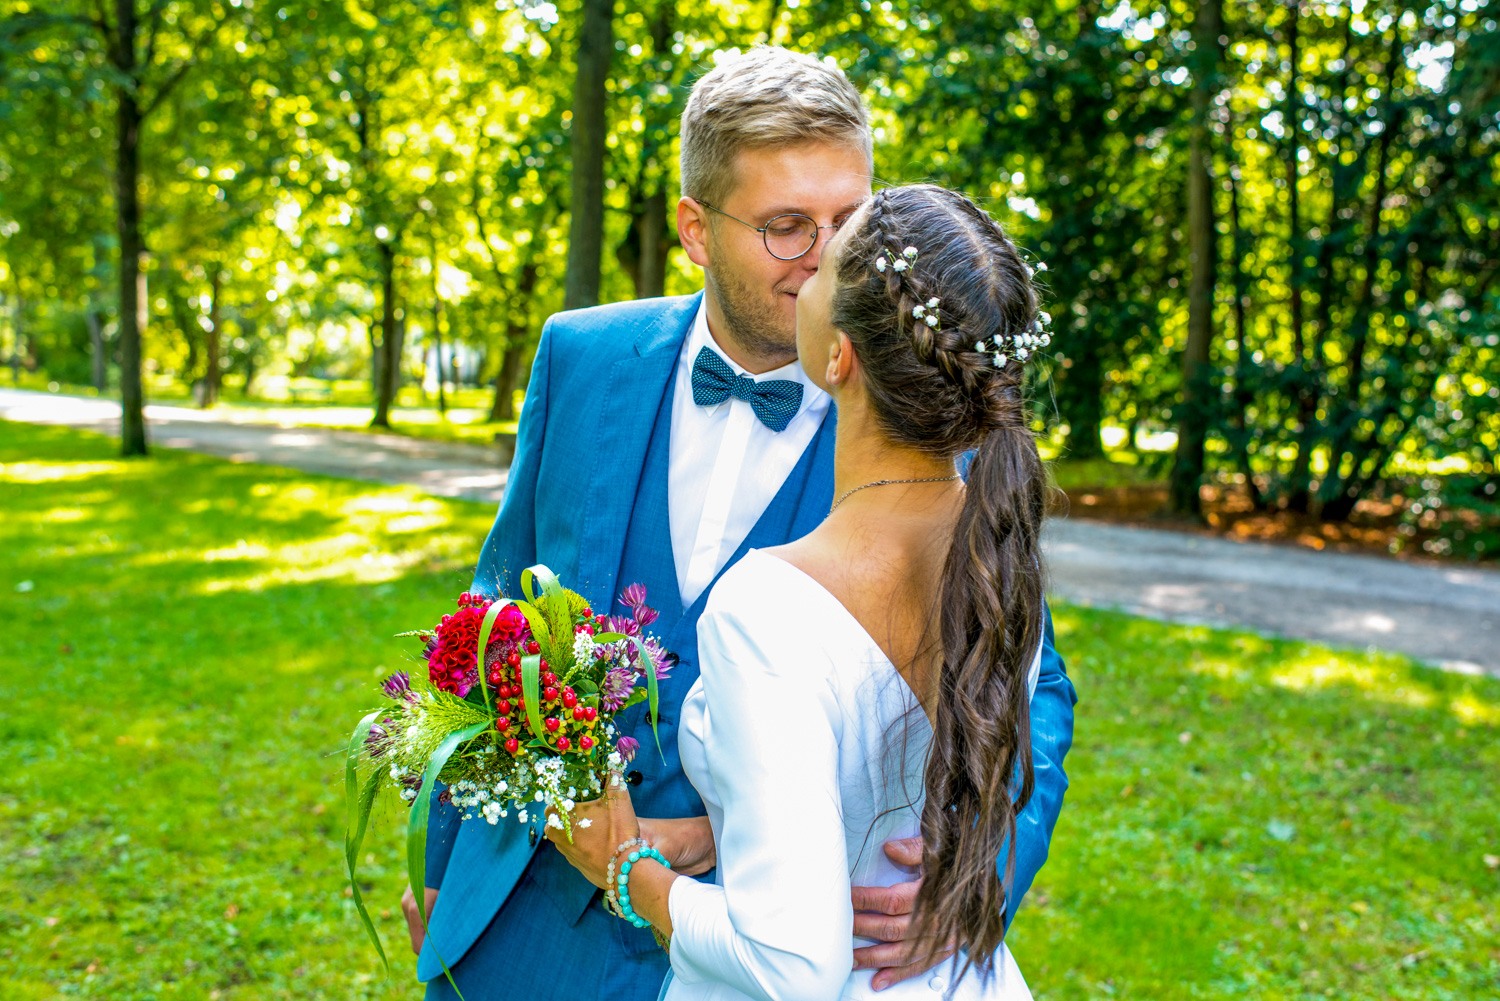 Hochzeitsfotograf Erlangen-Hochzeitspaar küsst sich liebevoll bei strahlendem Sonnenschein draußen im Park auf einer grünen Wiese